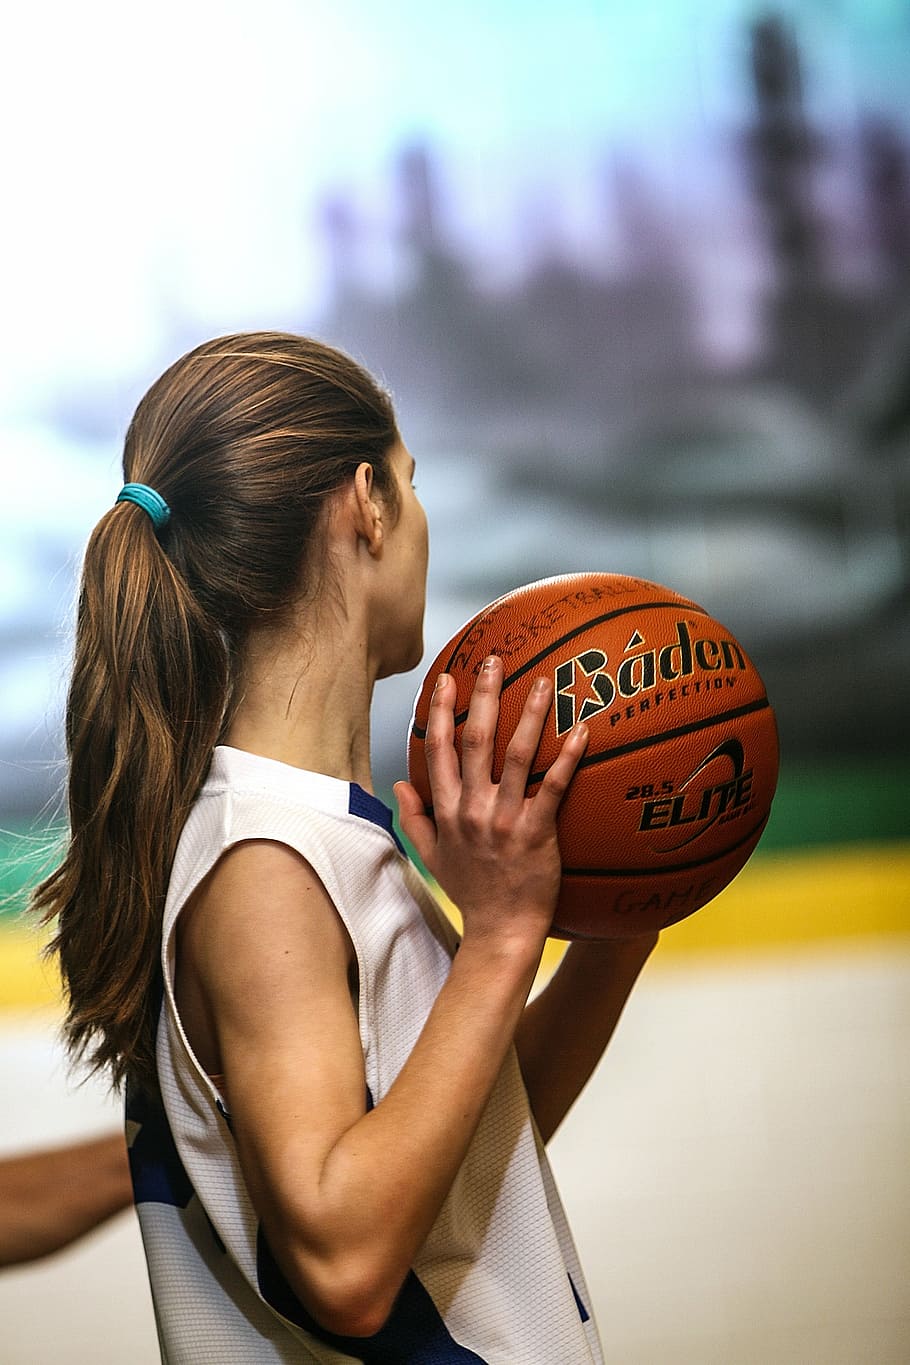 Mujer sosteniendo baloncesto, baloncesto, baloncesto femenino, femenino, adolescente, atleta, jugador, juventud, persona, celebración - Pxfuel